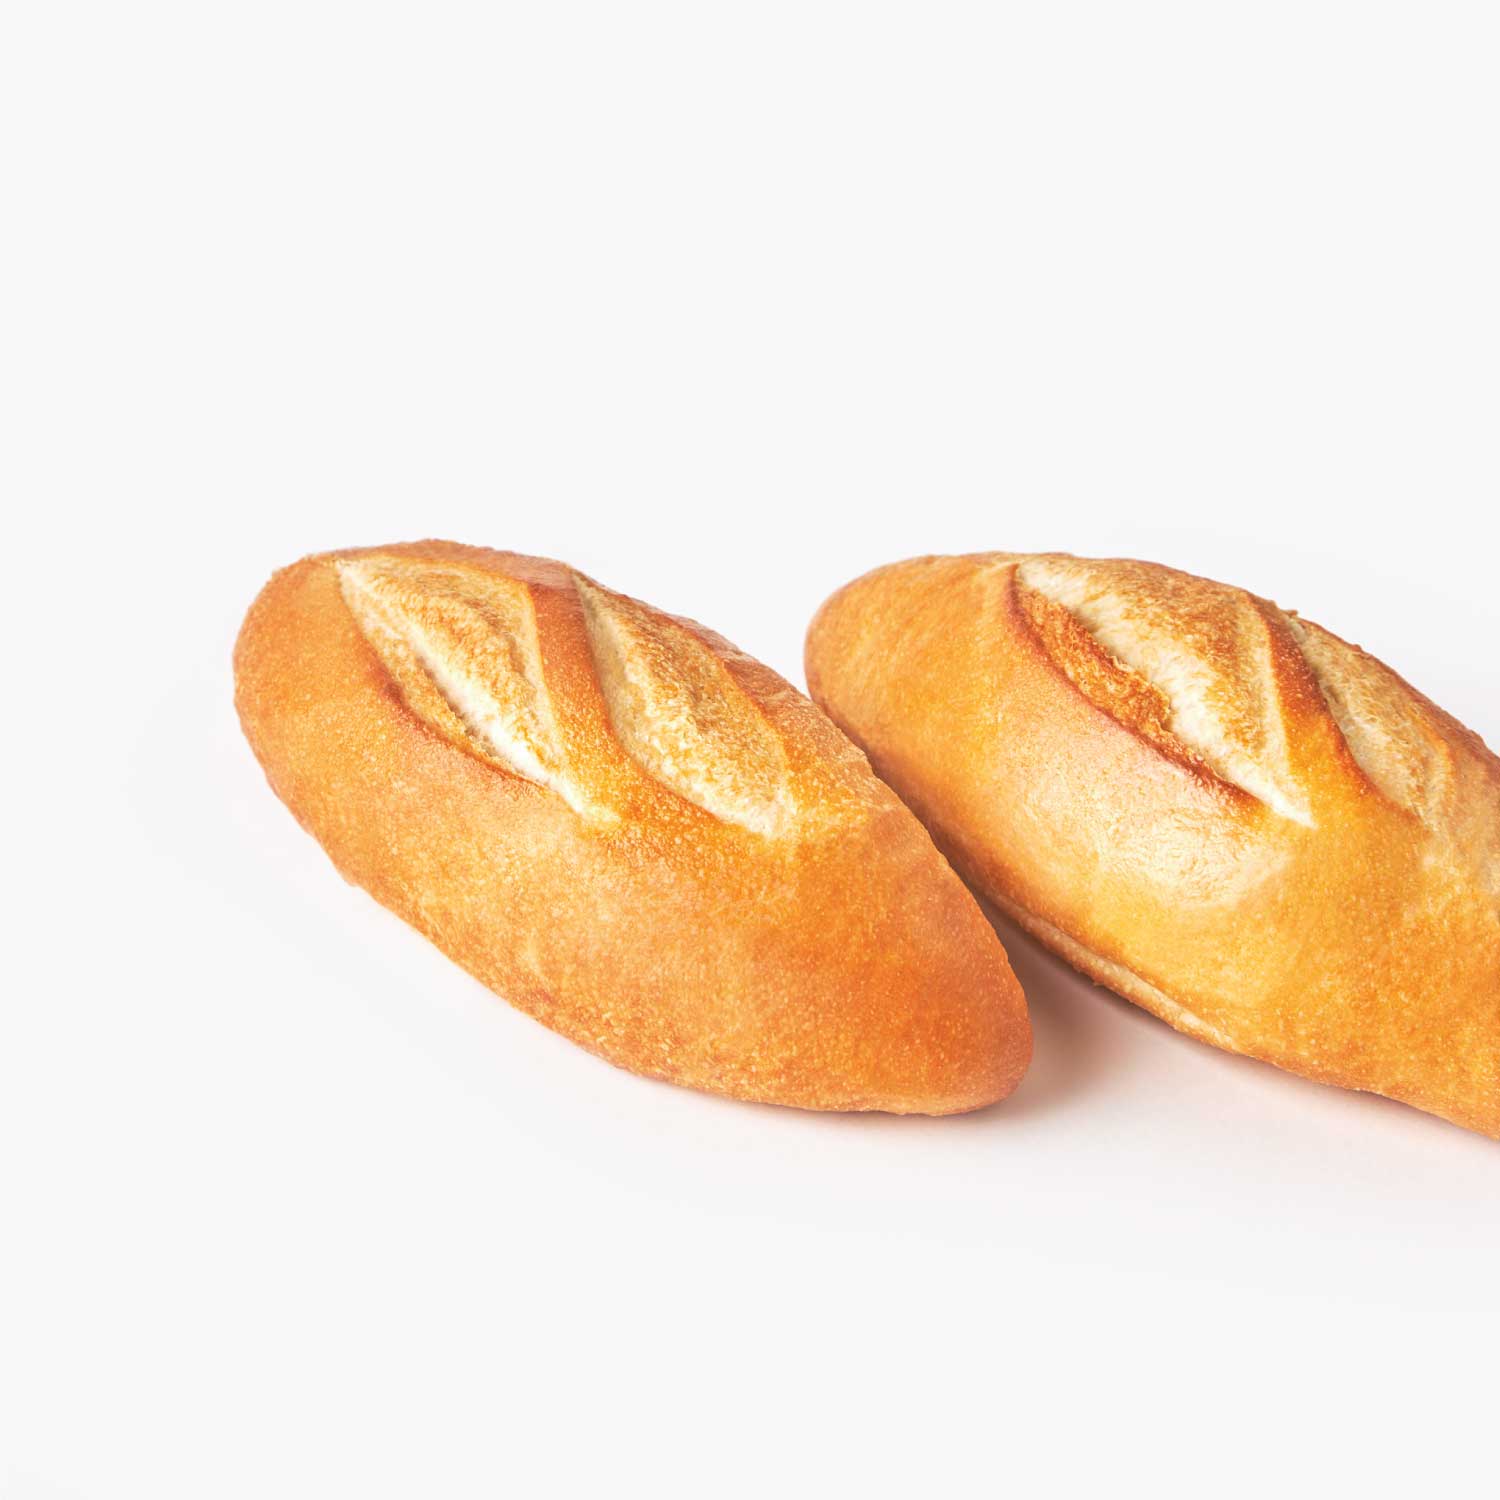 ขนมปังแช่แข็ง : SYNOVA มินิบาเก็ต (ยกกล่อง)